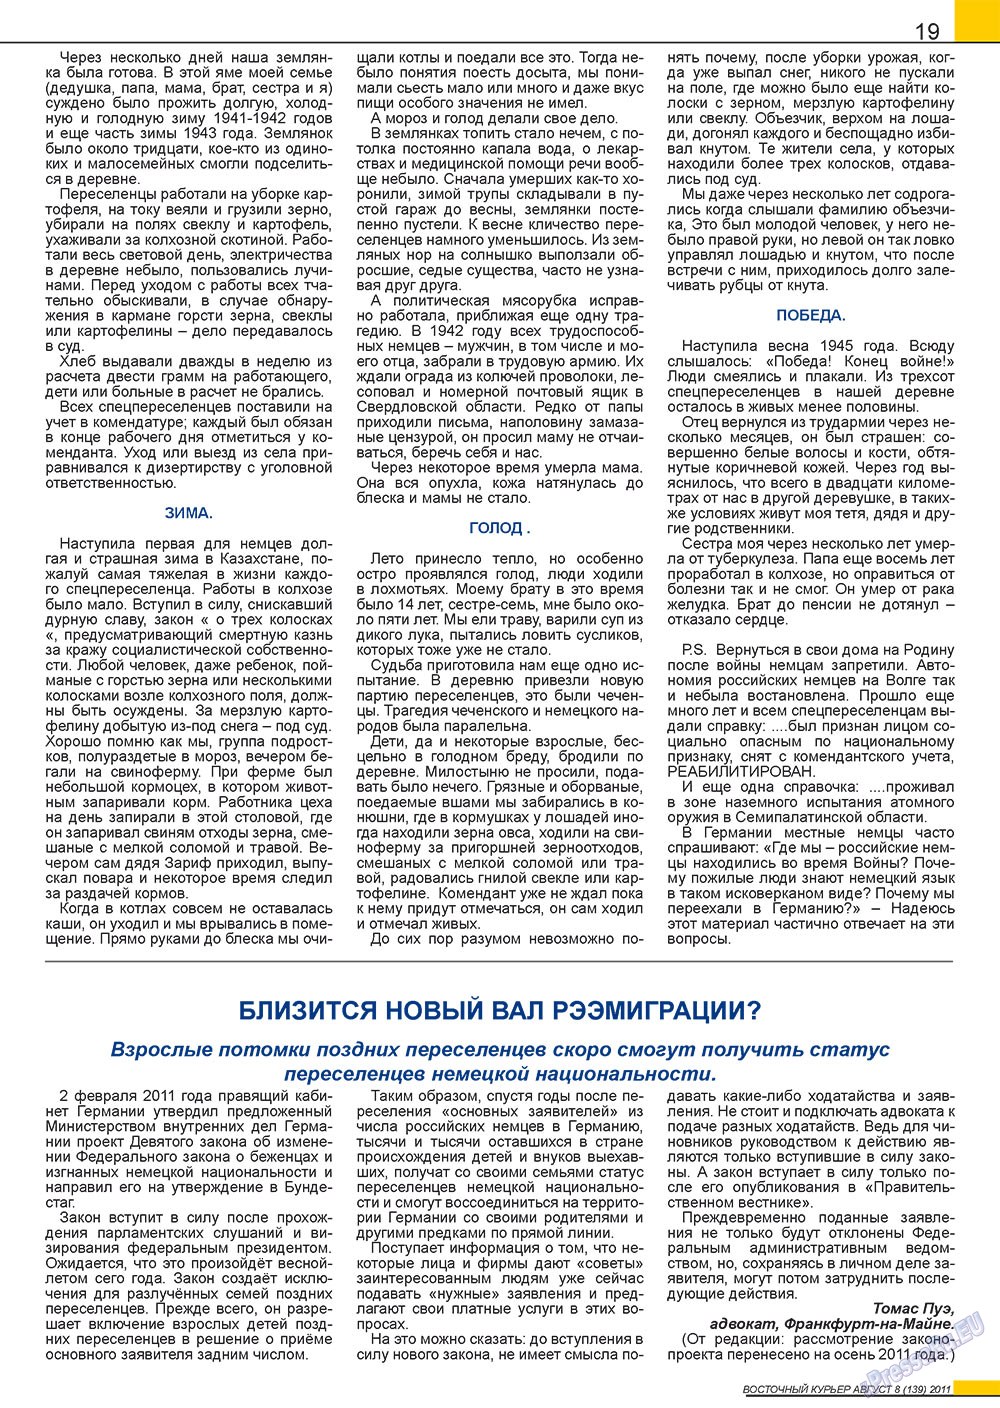 Восточный курьер, журнал. 2011 №8 стр.19